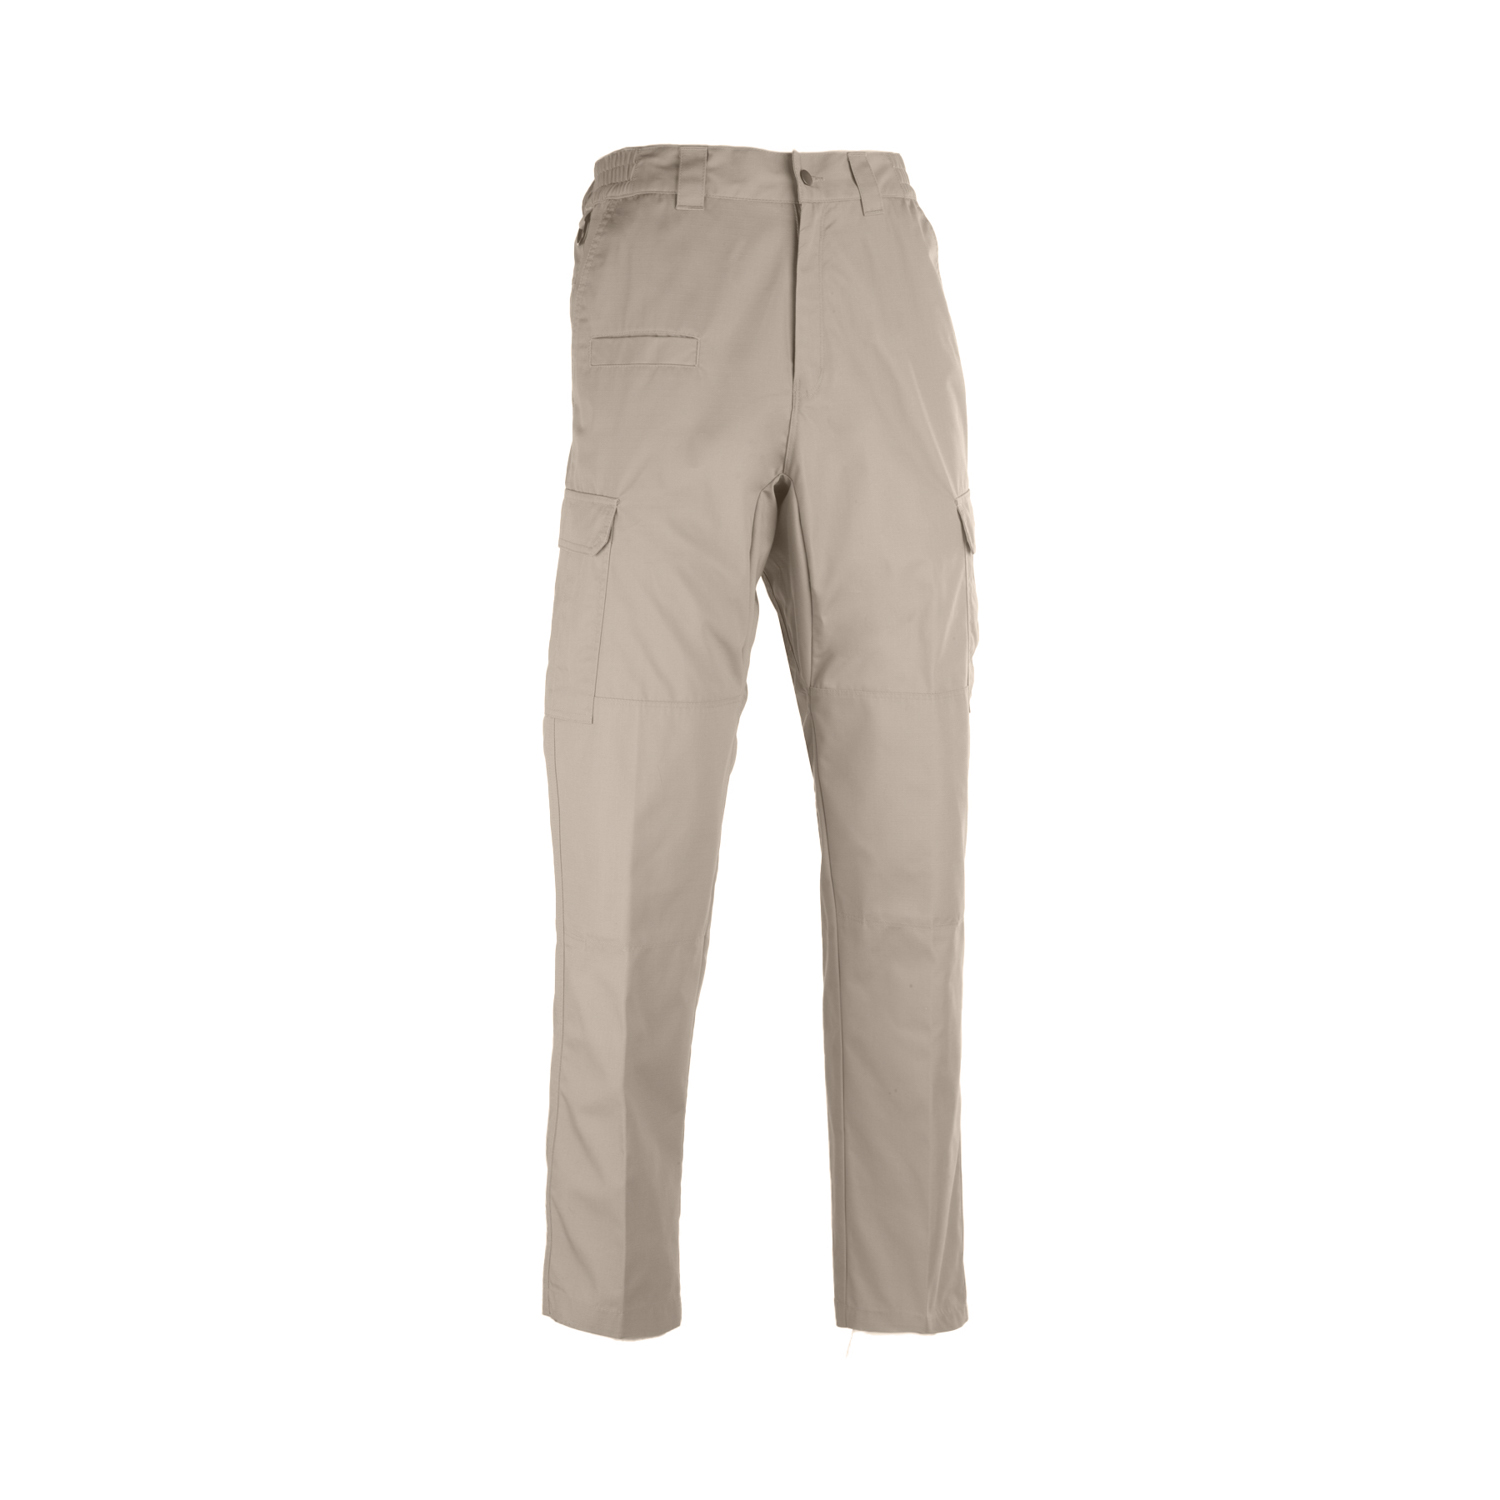 Galls Pro Men's Tac Force Tactical Pants | Galls Pants